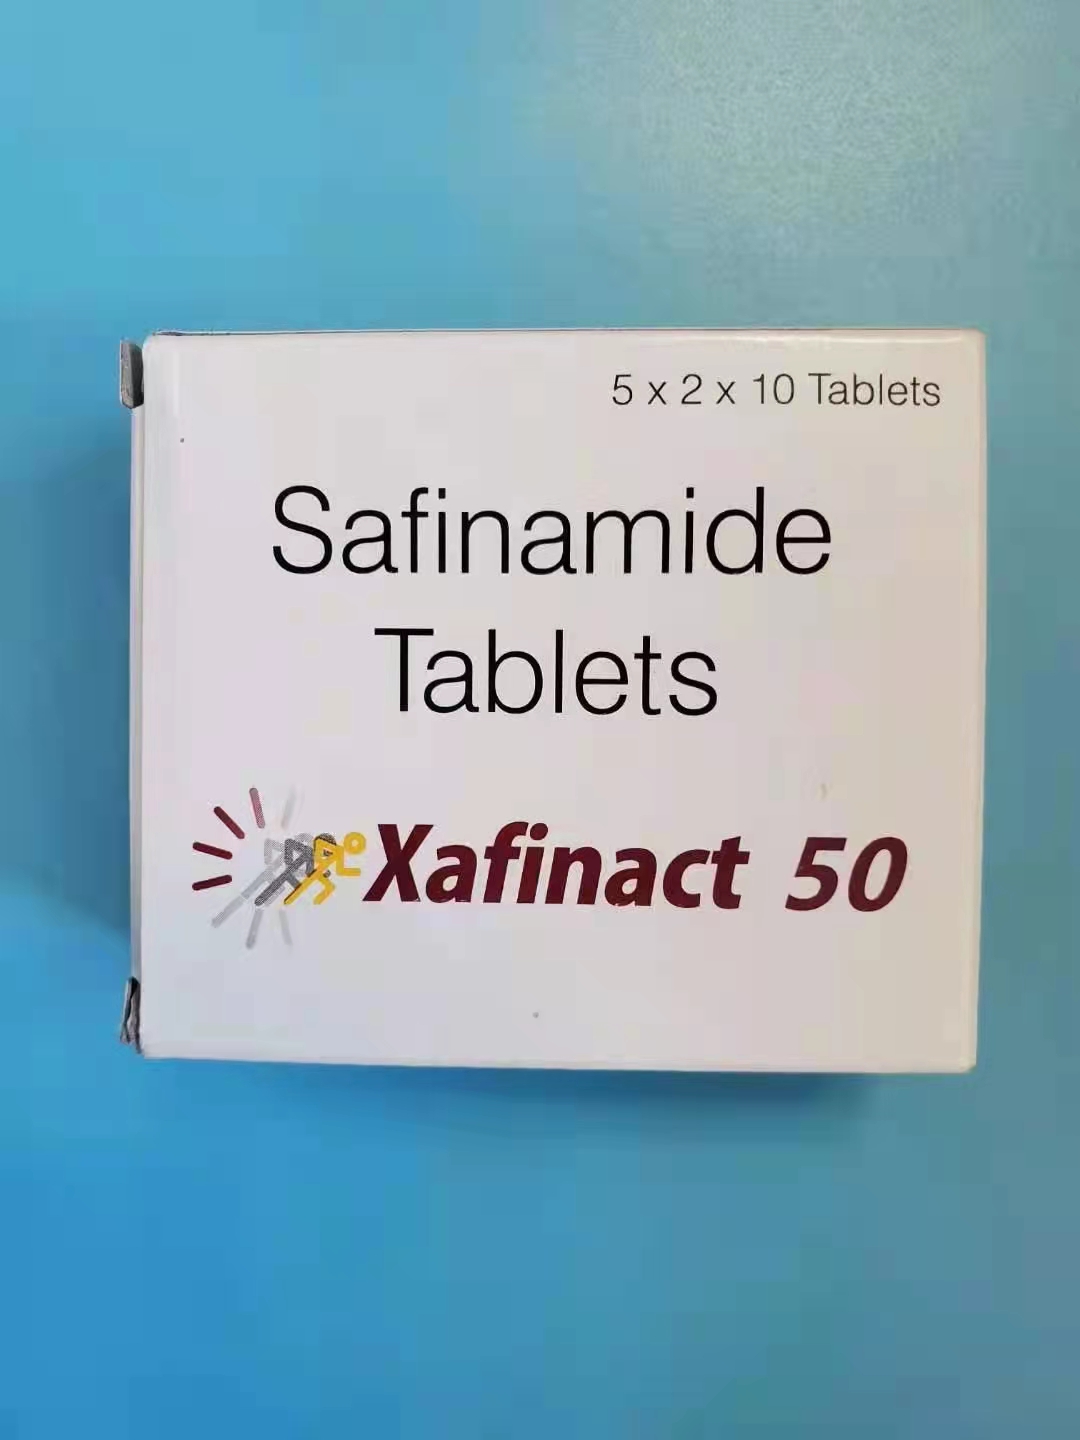 单胺氧化酶抑制剂沙芬酰胺Safinamide的用法用量说明